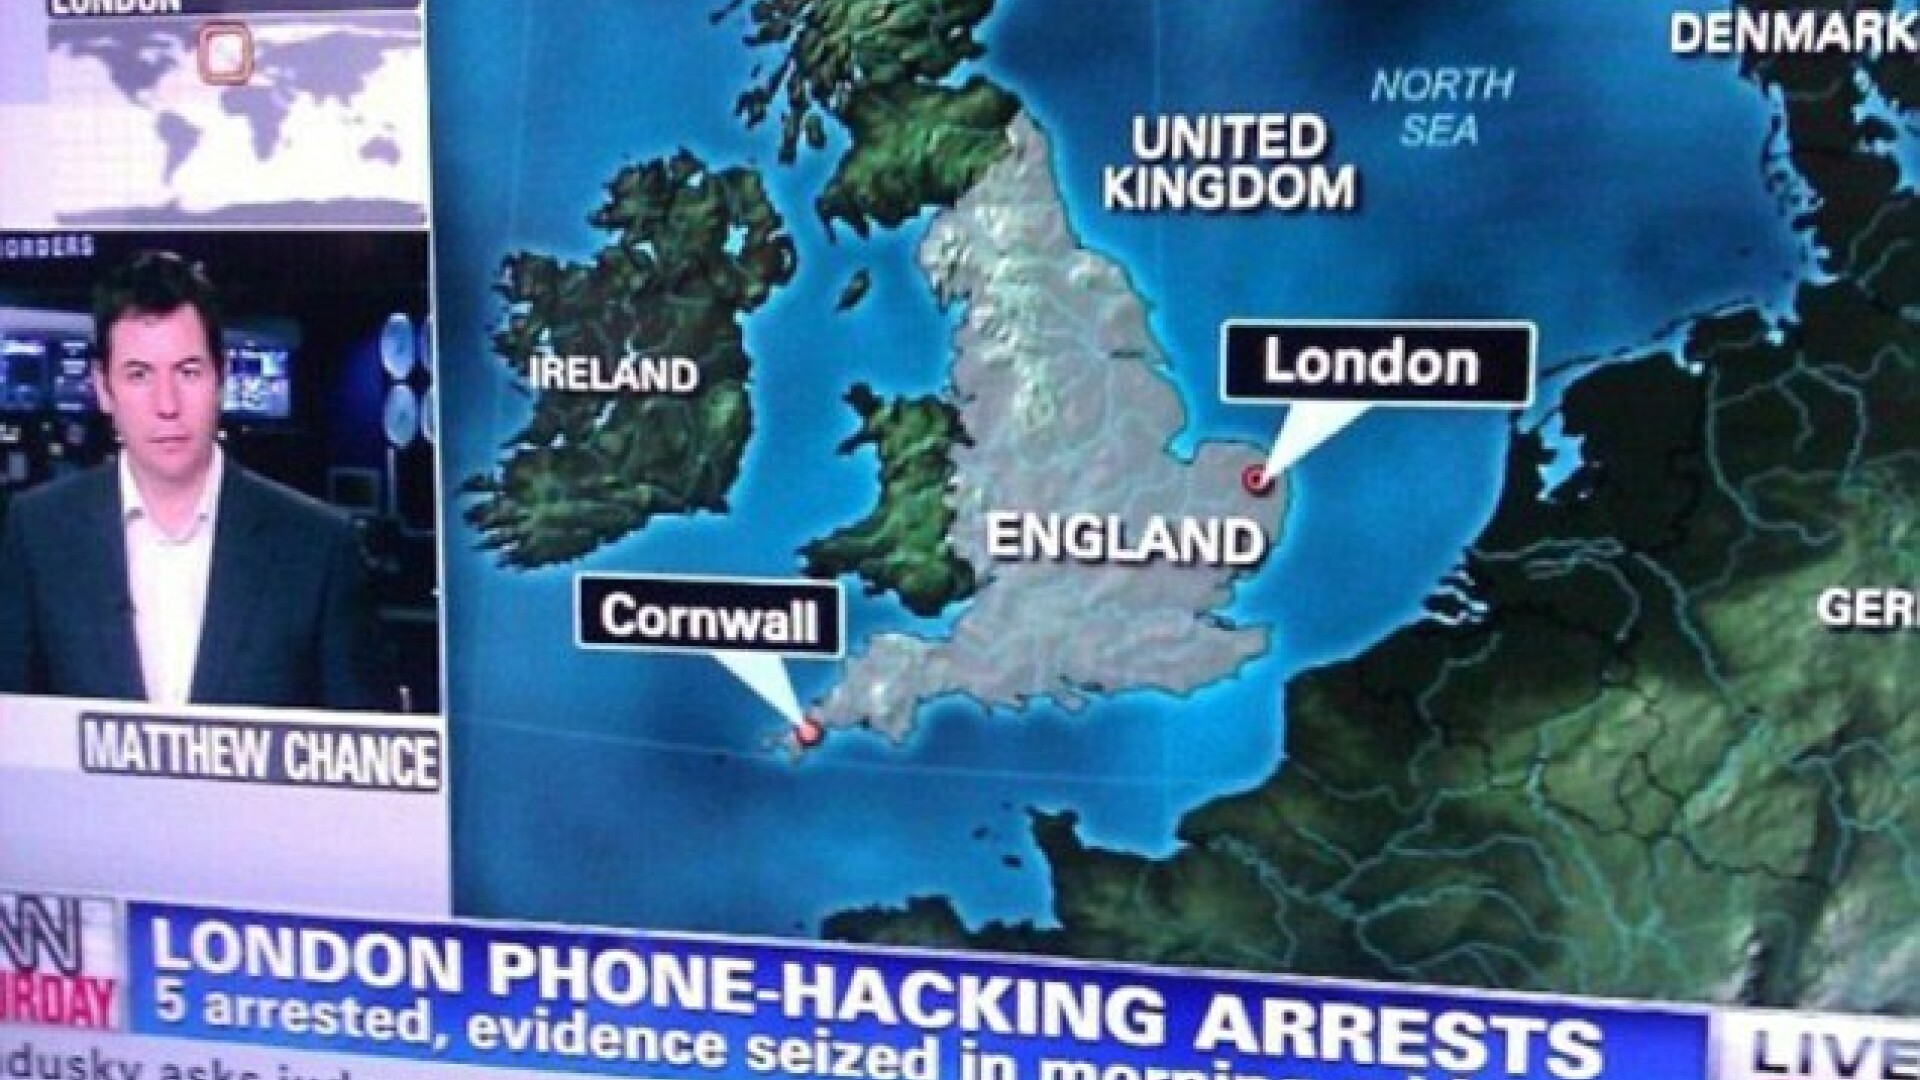 harta CNN, cu Londra localizata gresit